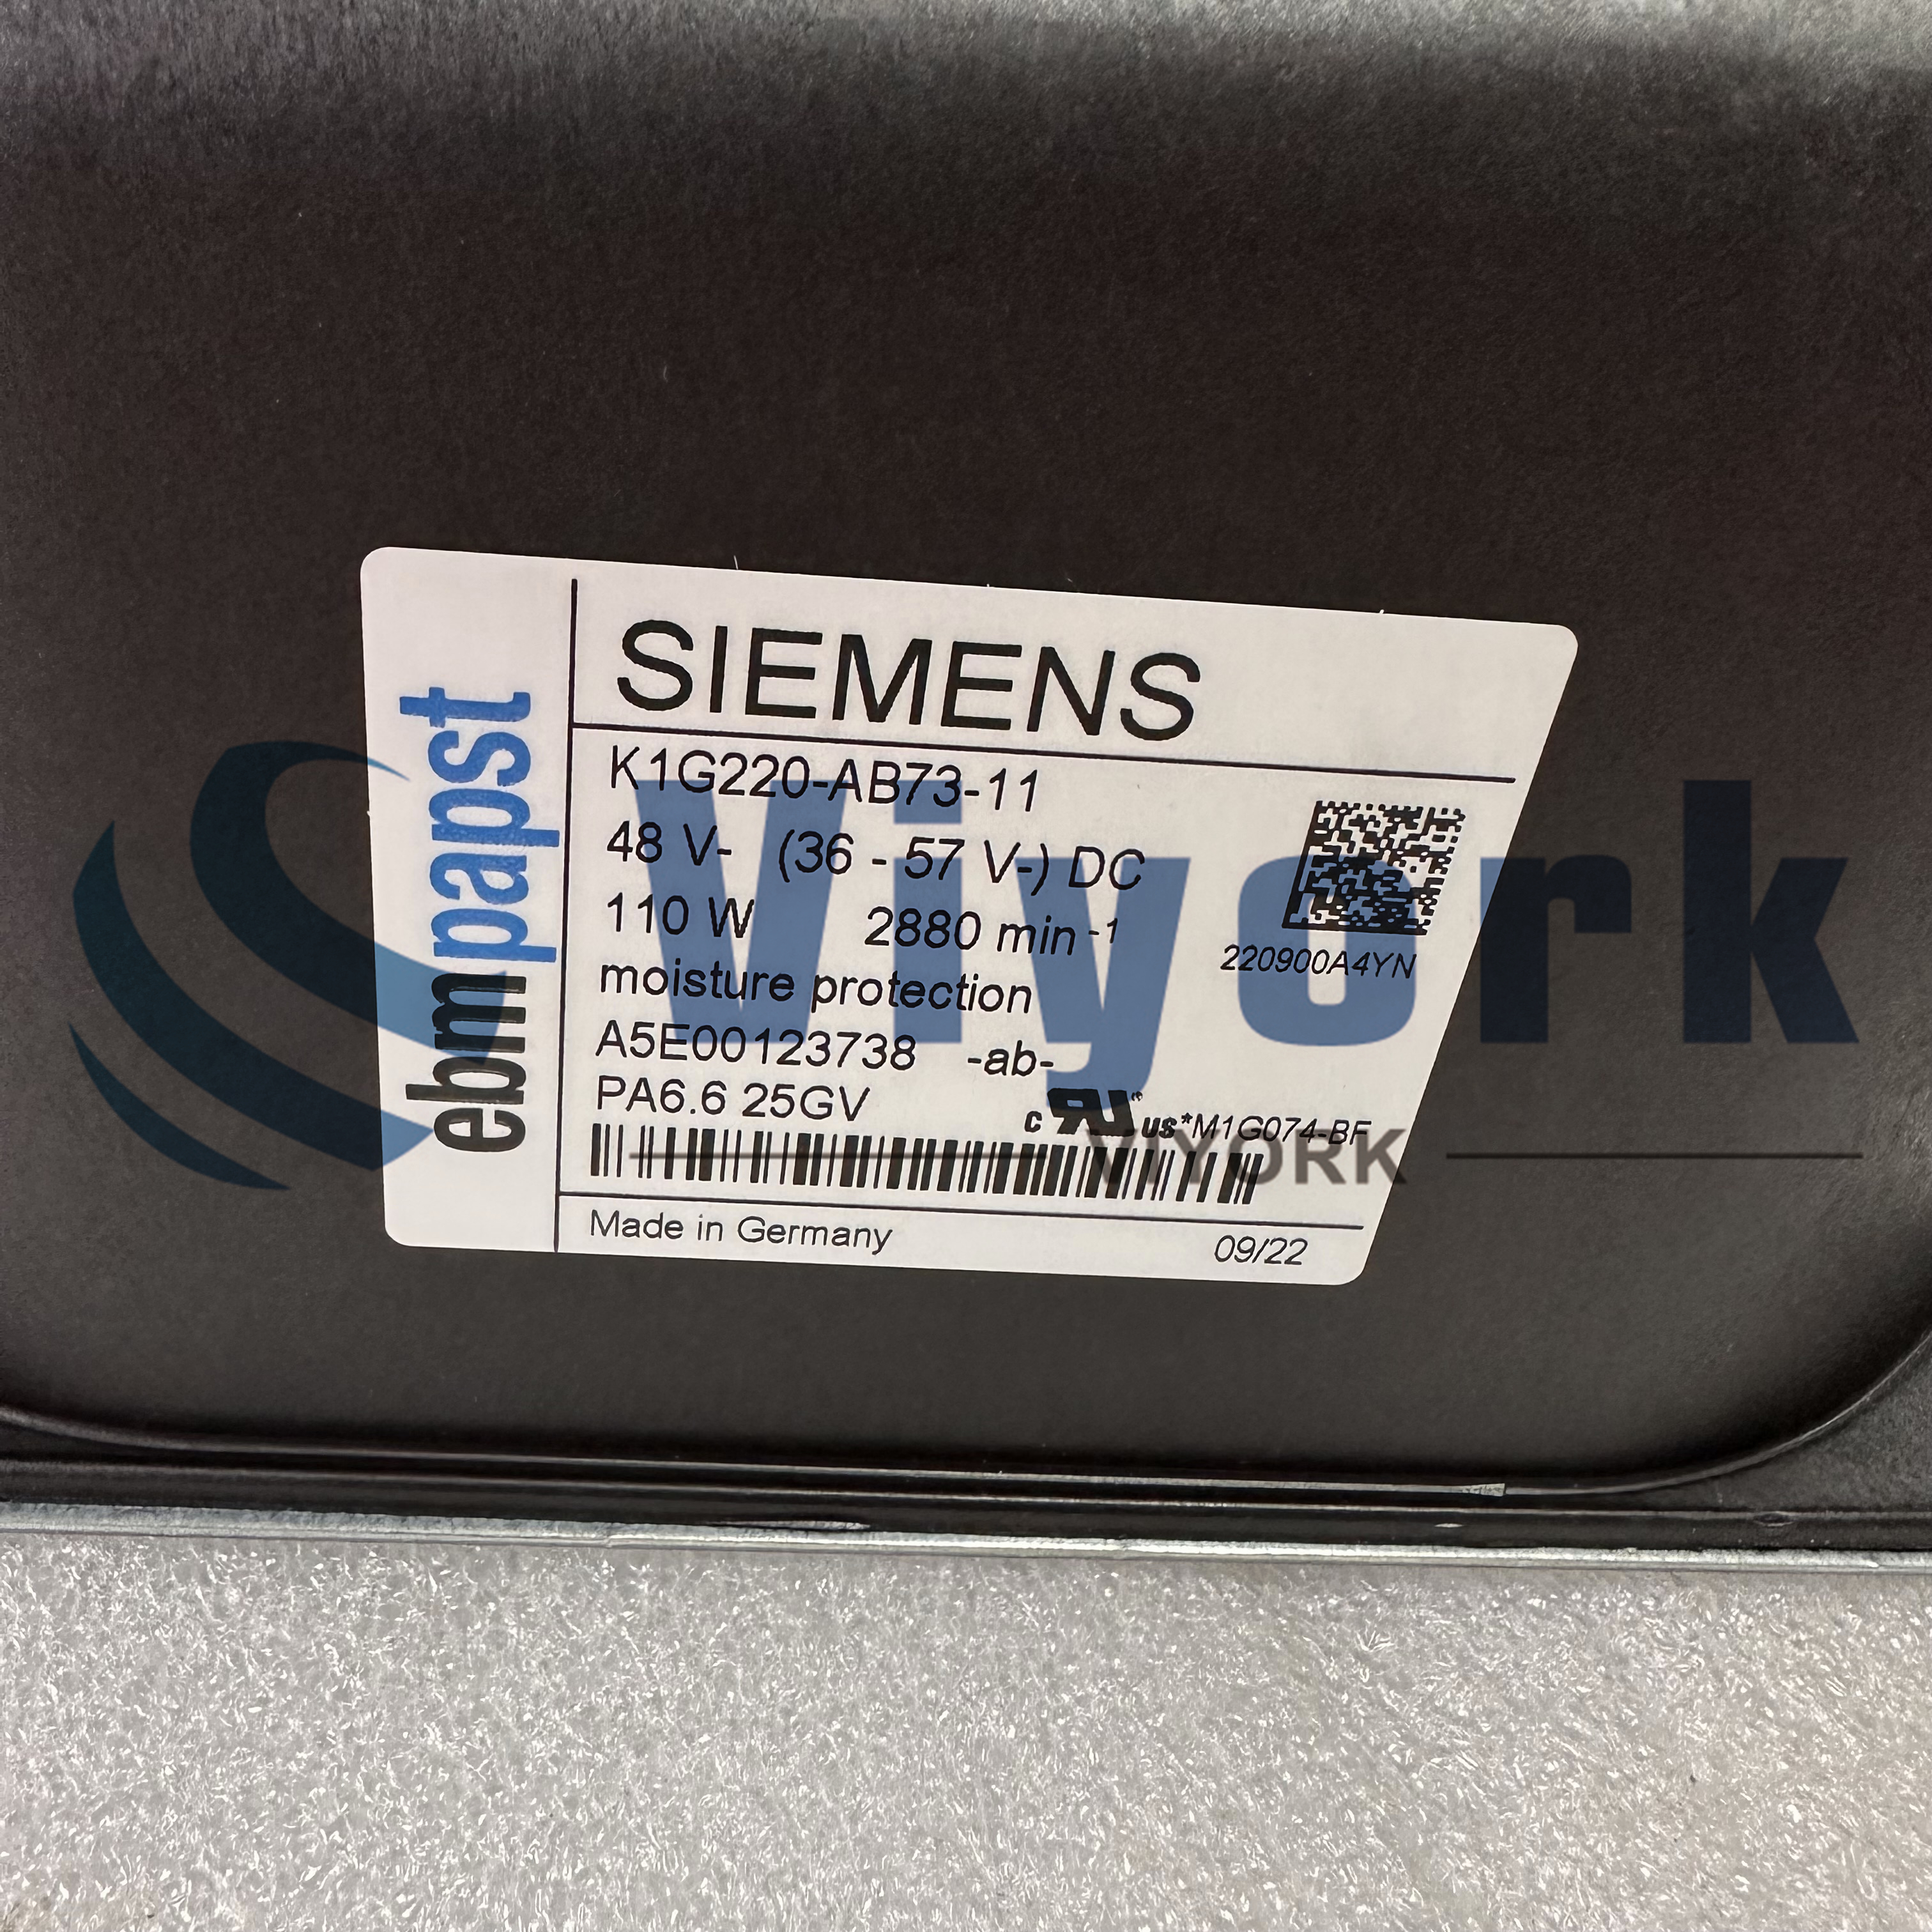 Siemens K1G220-AB73-11 FAN 110 W 2880 RPM 48VDC